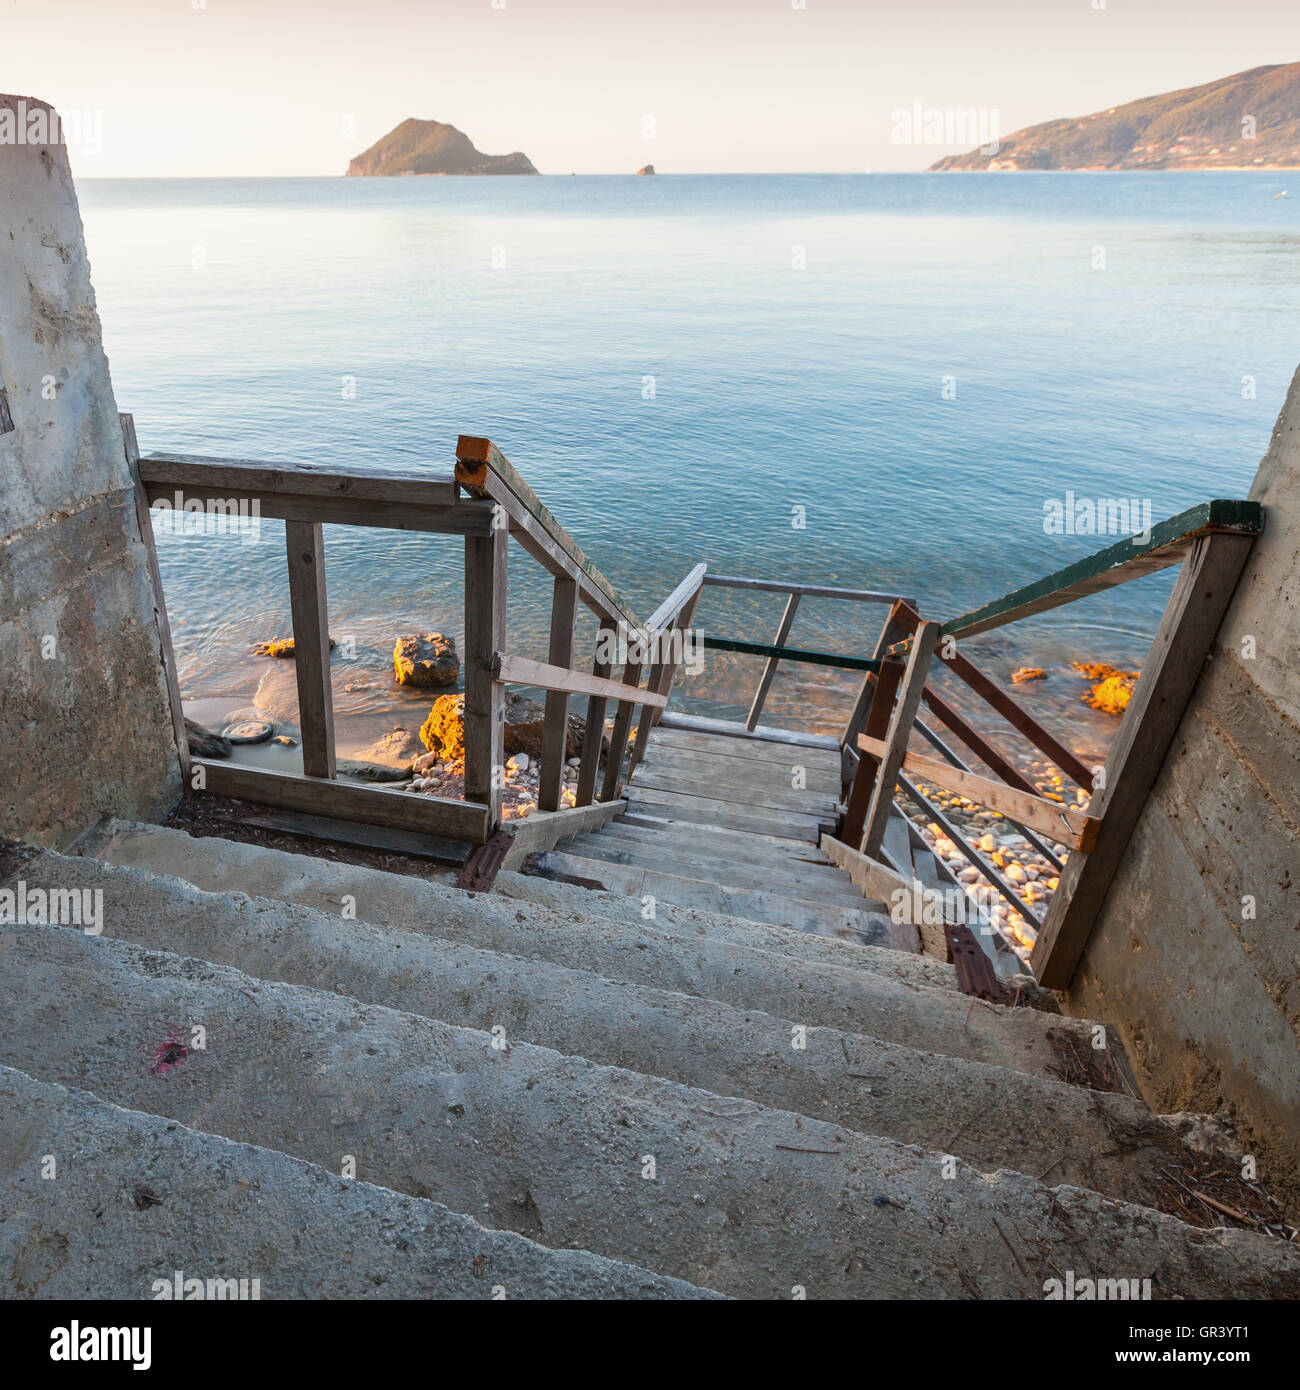 Un escalier descendant jusqu'à la côte. Côtières carrés matin seascape de l'île de Zakynthos, Grèce Banque D'Images